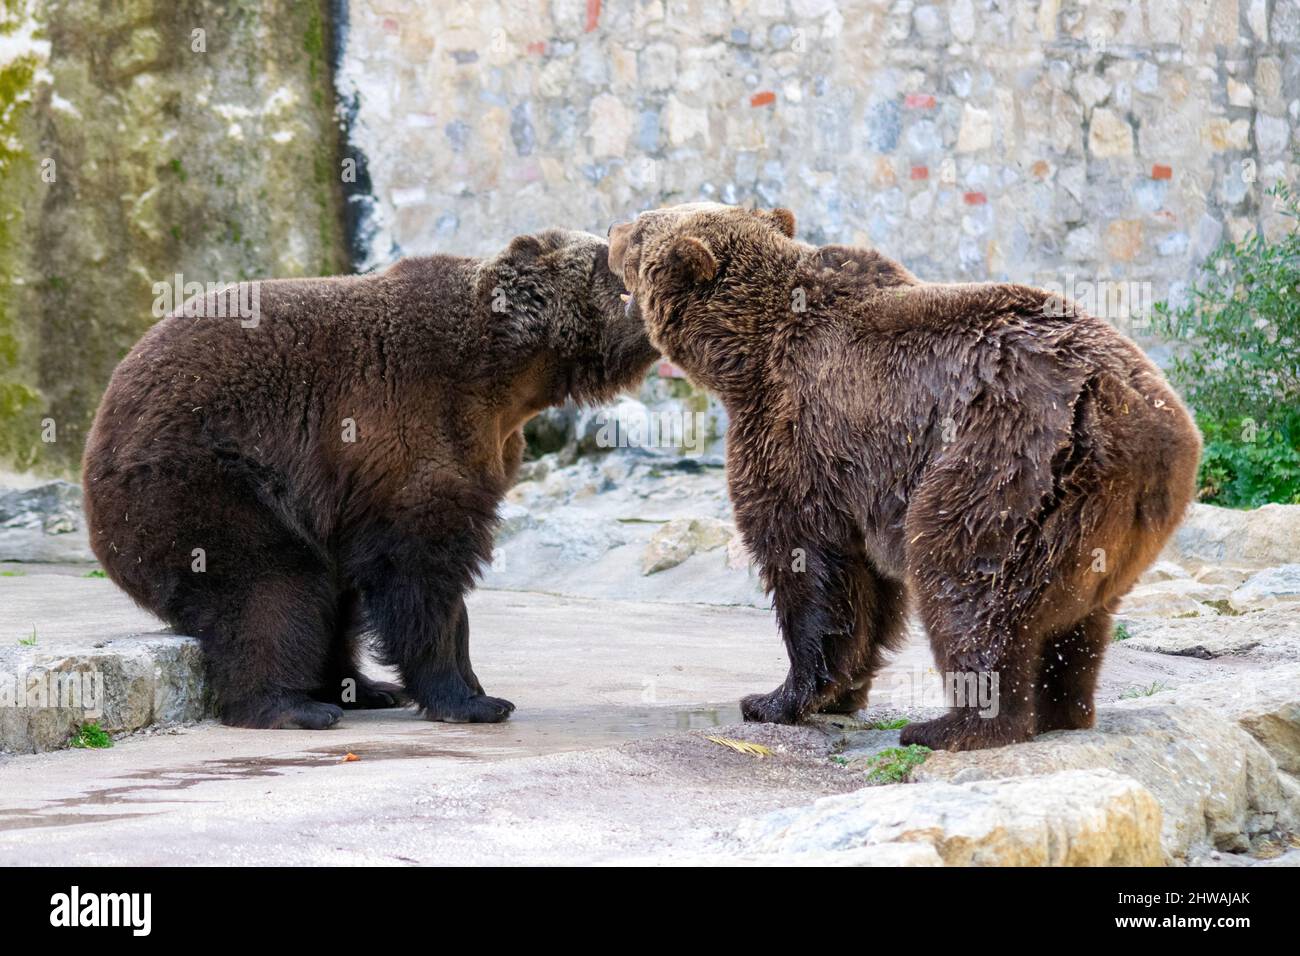 Zoo de Lisbonne, portugal. Le grizzli (Ursus arctos horribilis), également connu sous le nom d'ours brun nord-américain ou tout simplement grizzli. Deux ours jouent. Banque D'Images